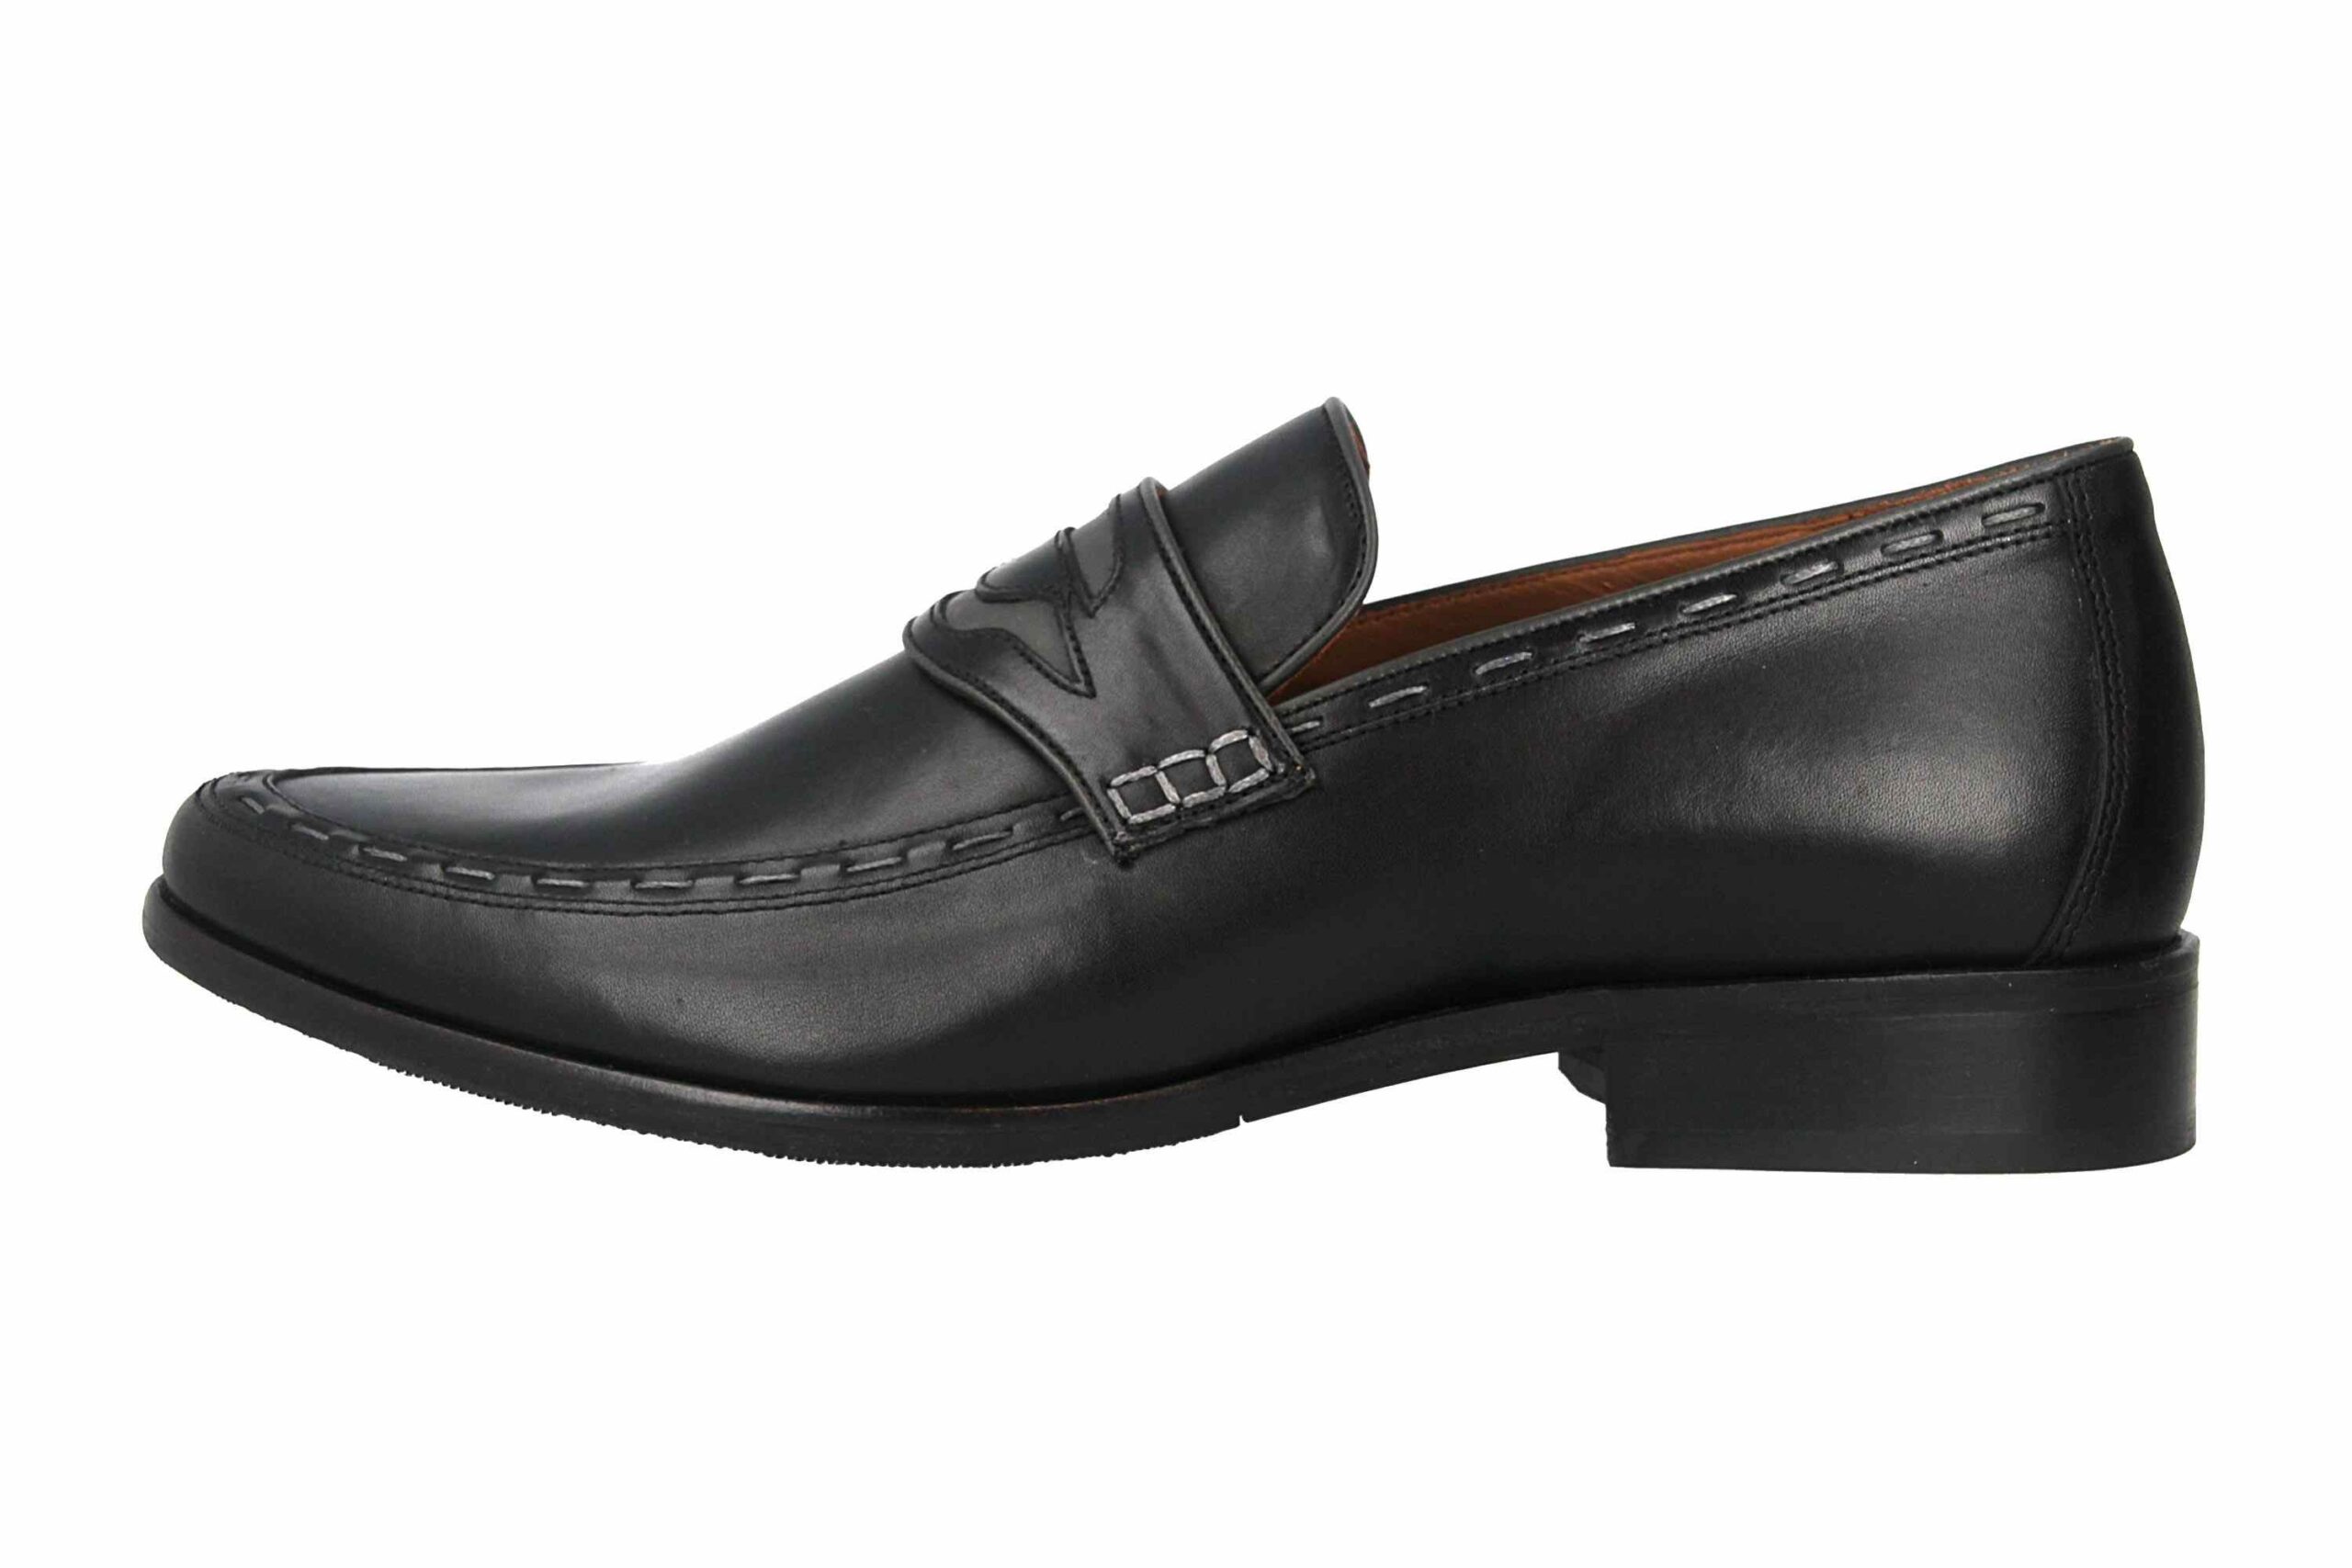 Manz Enrico AGO Business-Schuhe in Übergrößen Schwarz 111010-03-303 große Herrenschuhe